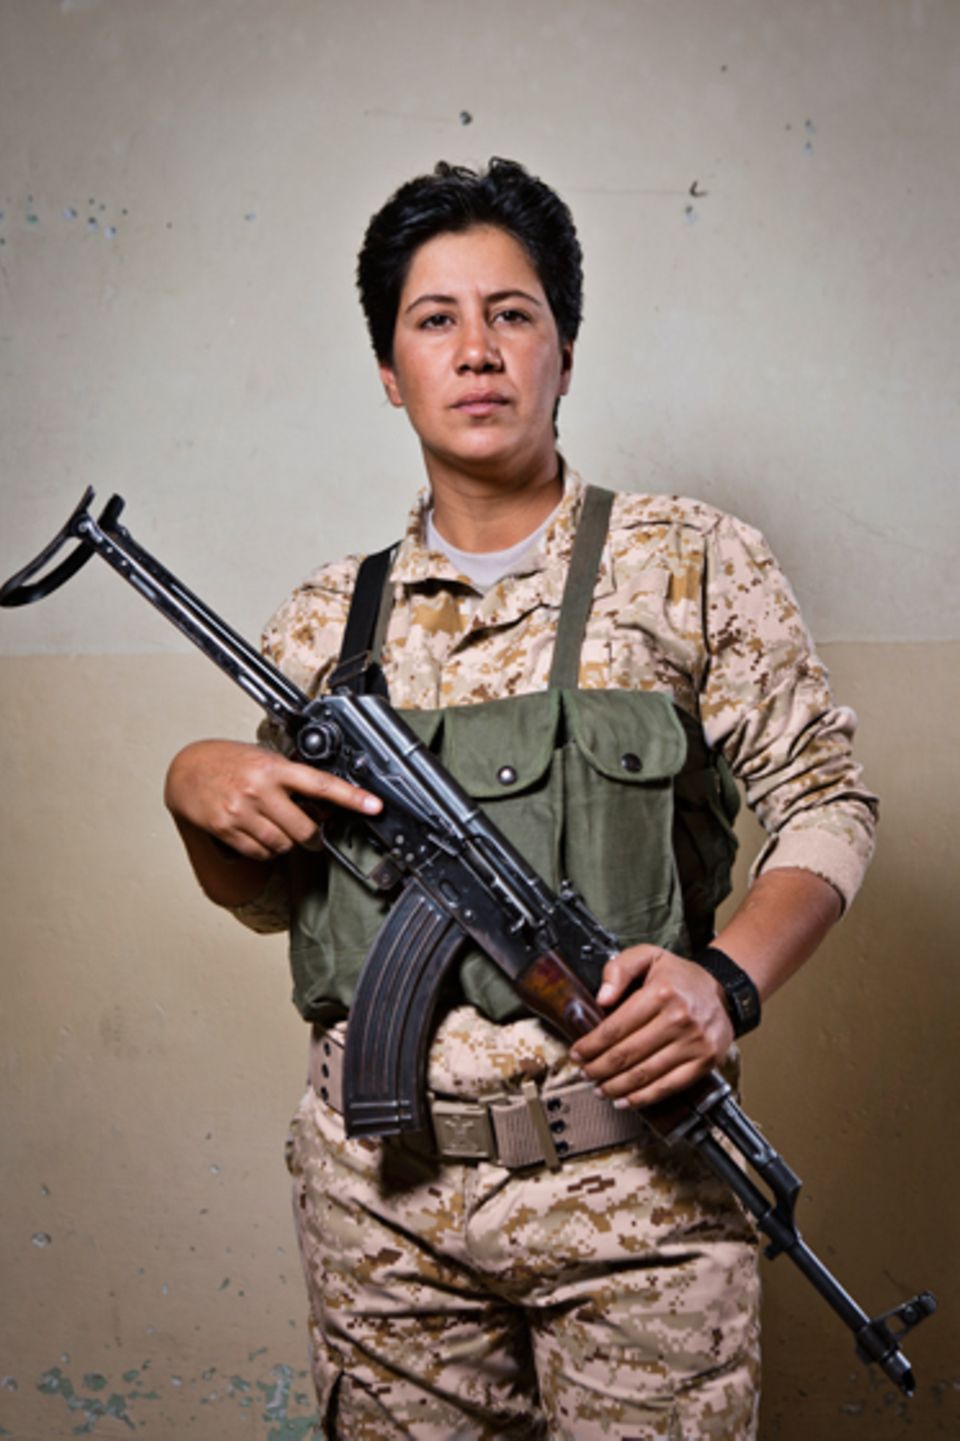 Politik: Sheyma Muheddin posiert mit ihrer AK47 – einer Kalaschnikow.